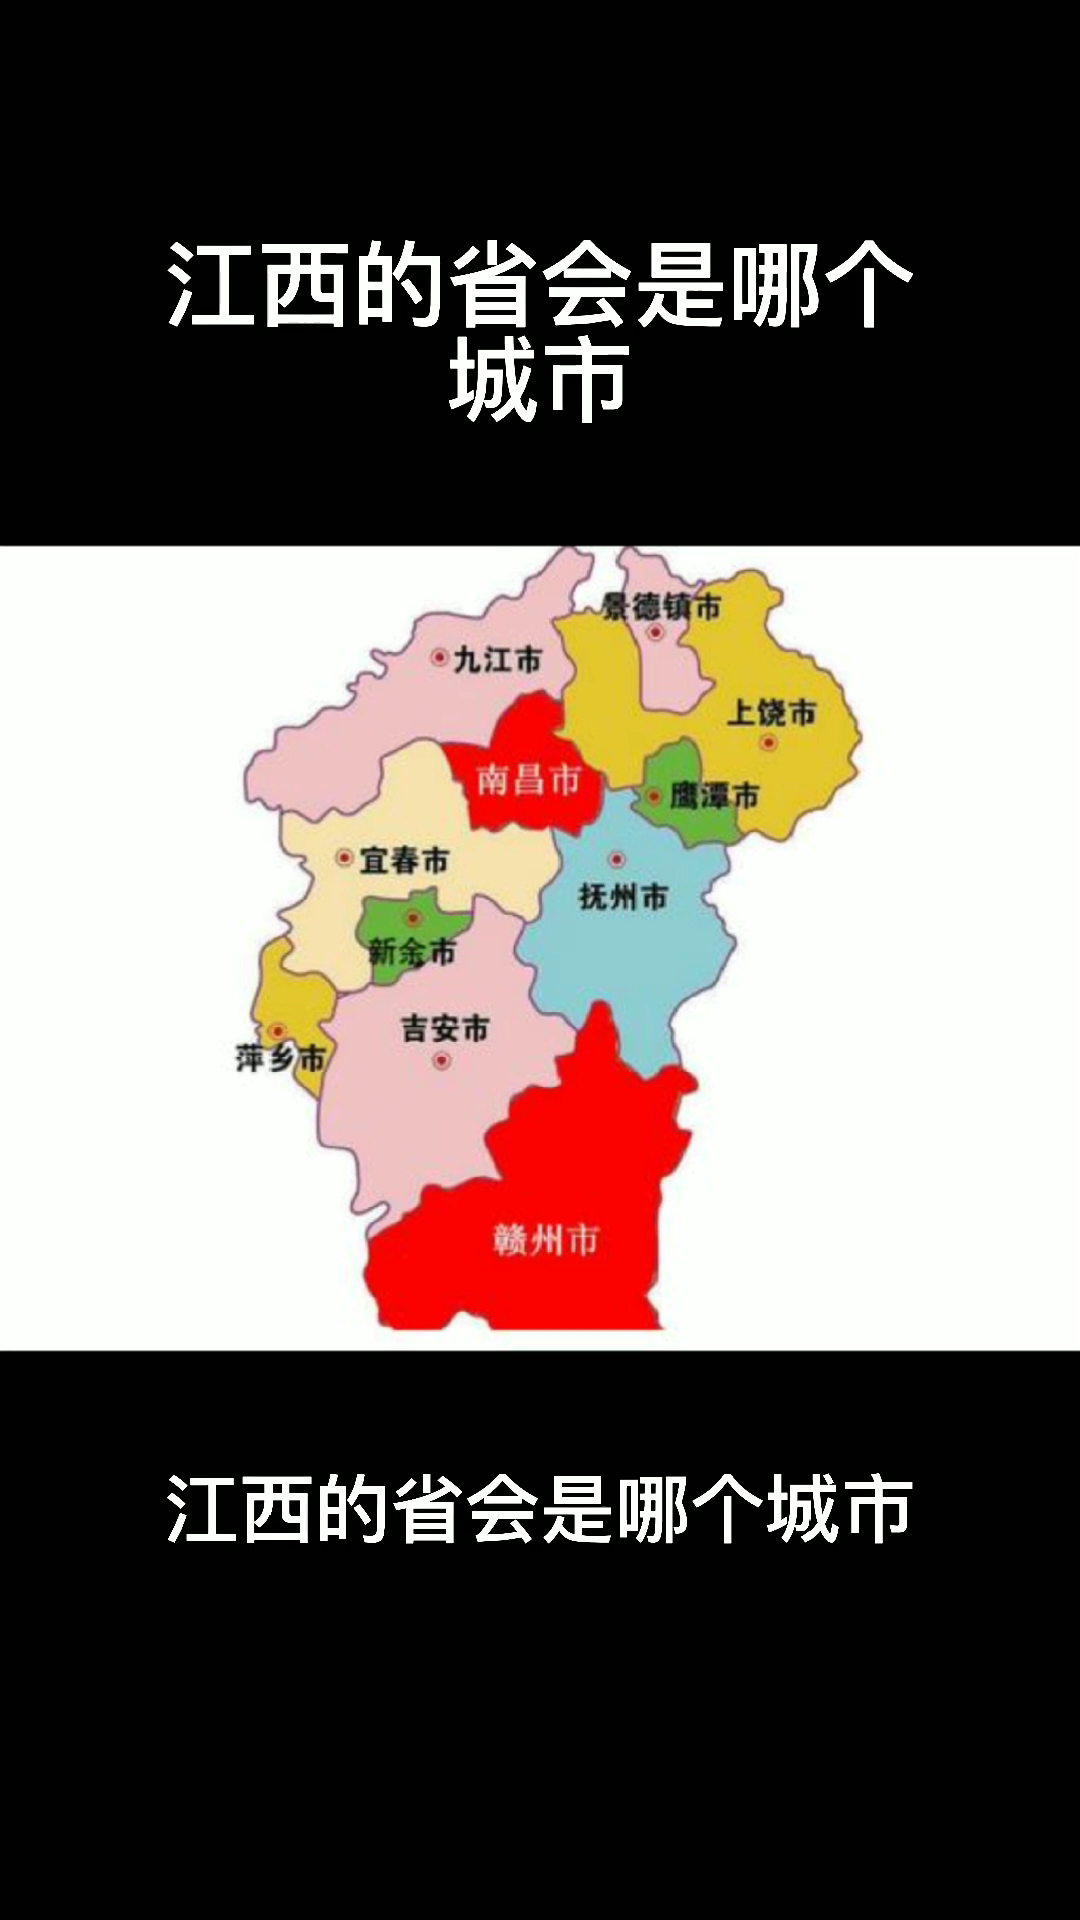 江西的省会是哪个城市